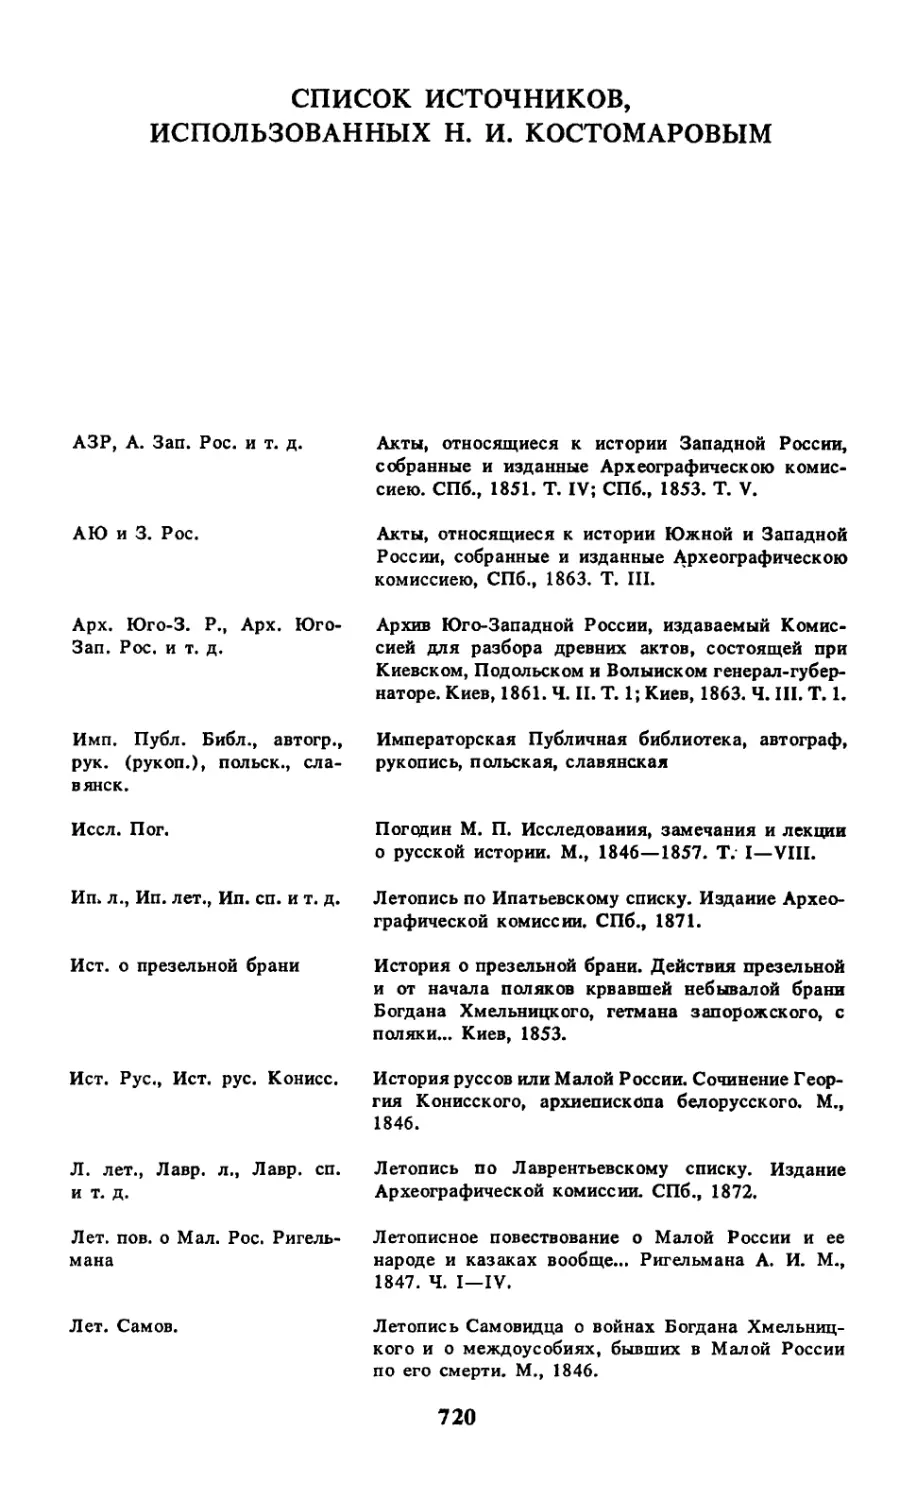 Список источников, использованных Н.И. Костомаровым